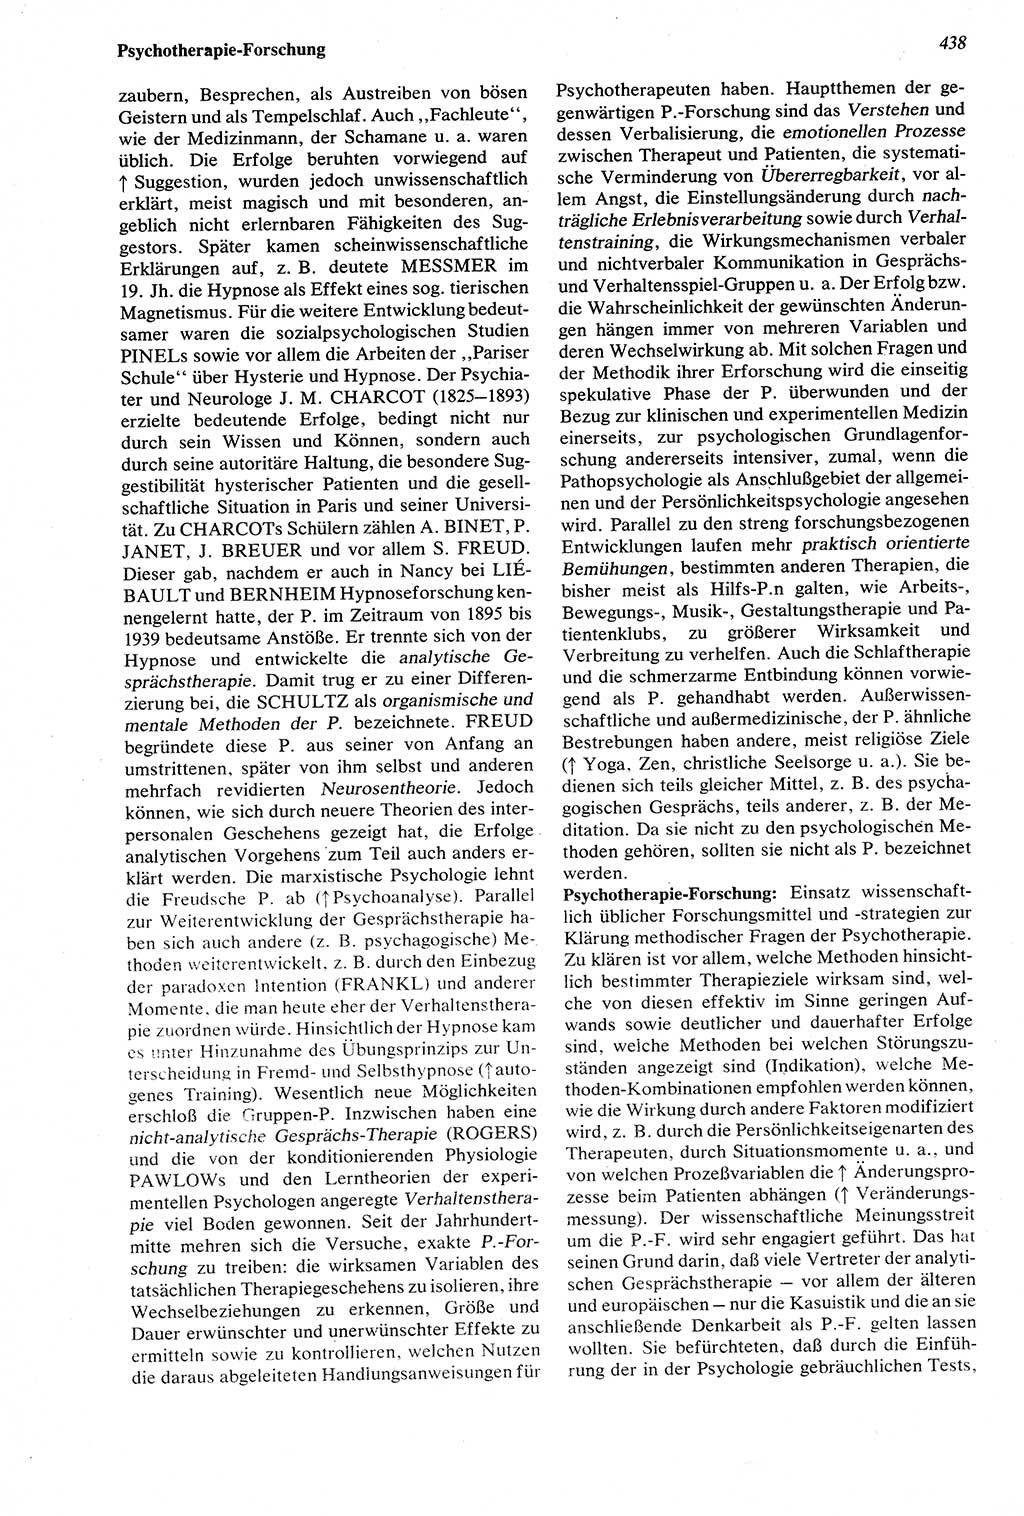 Wörterbuch der Psychologie [Deutsche Demokratische Republik (DDR)] 1976, Seite 438 (Wb. Psych. DDR 1976, S. 438)